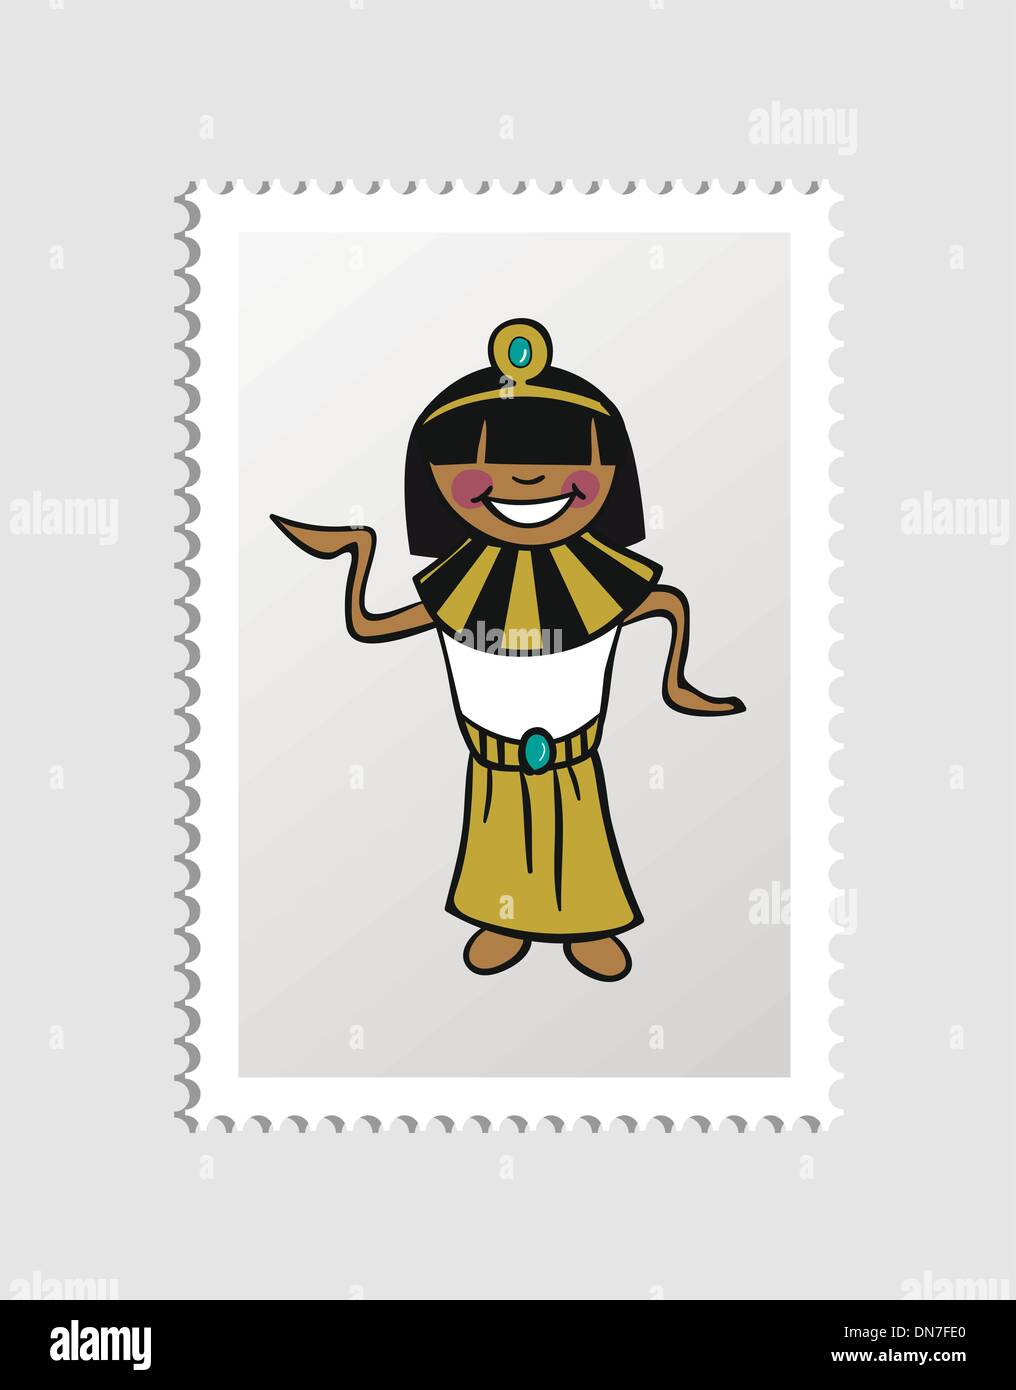 Timbre postal personnage égyptien Illustration de Vecteur